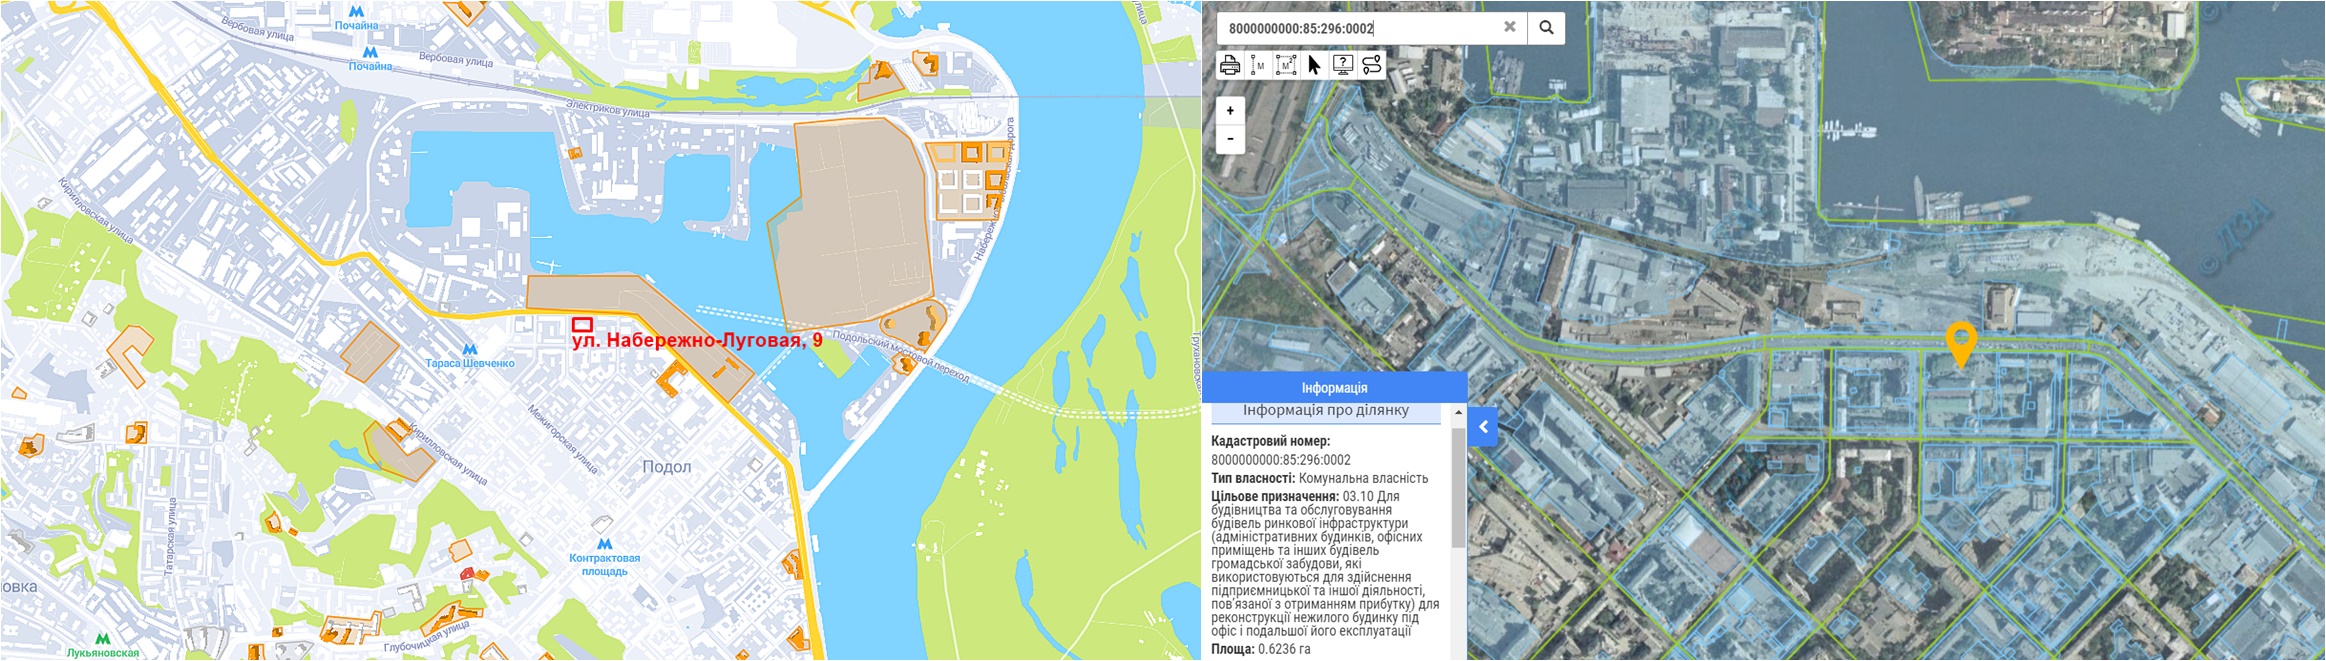 Проект по ул. Набережно-Луговая, 9 данные кадастра и на карте